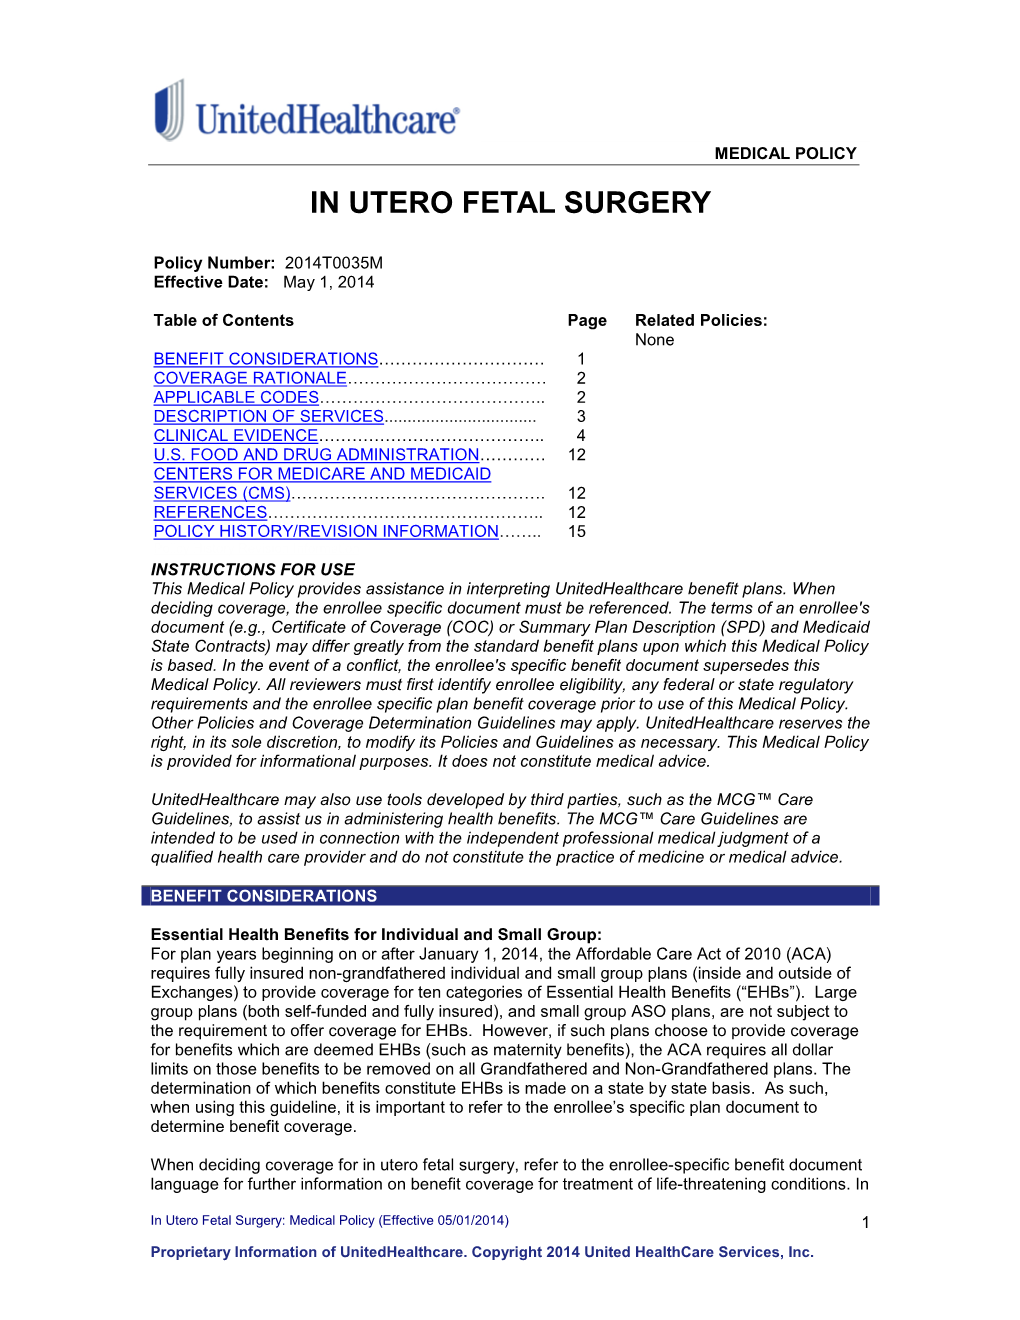 In Utero Fetal Surgery